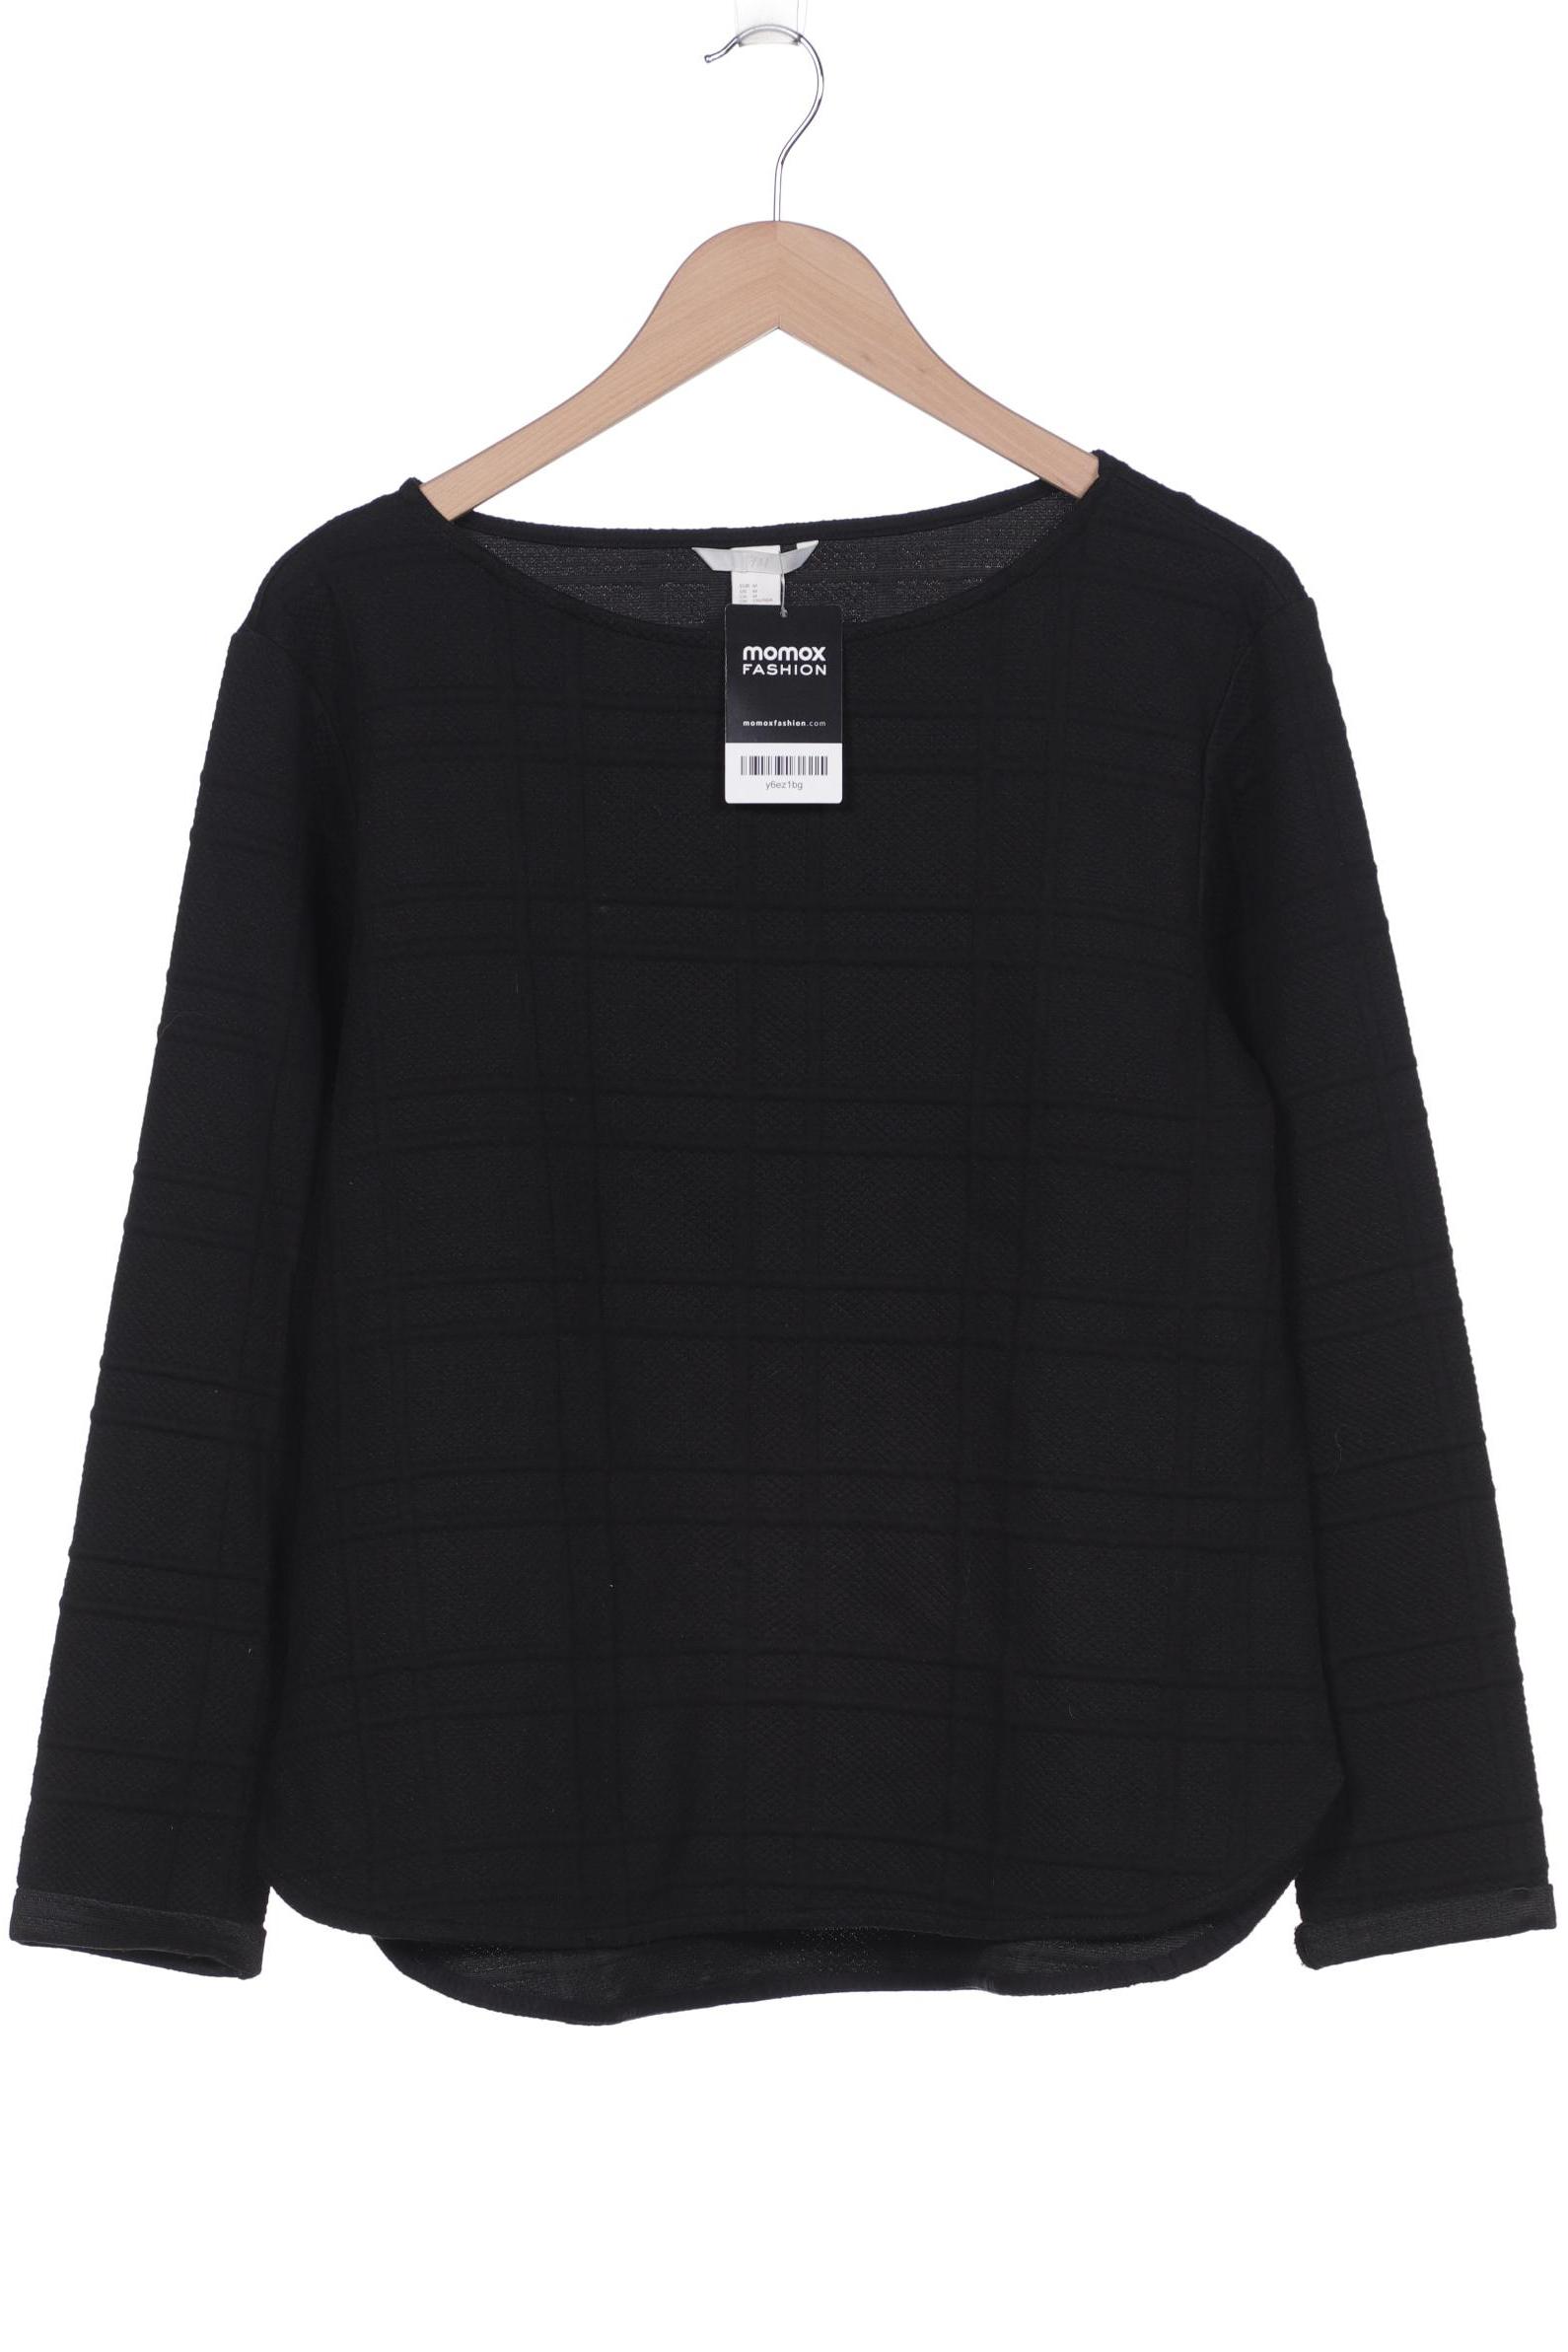 H&M Damen Sweatshirt, schwarz, Gr. 38 von H&M